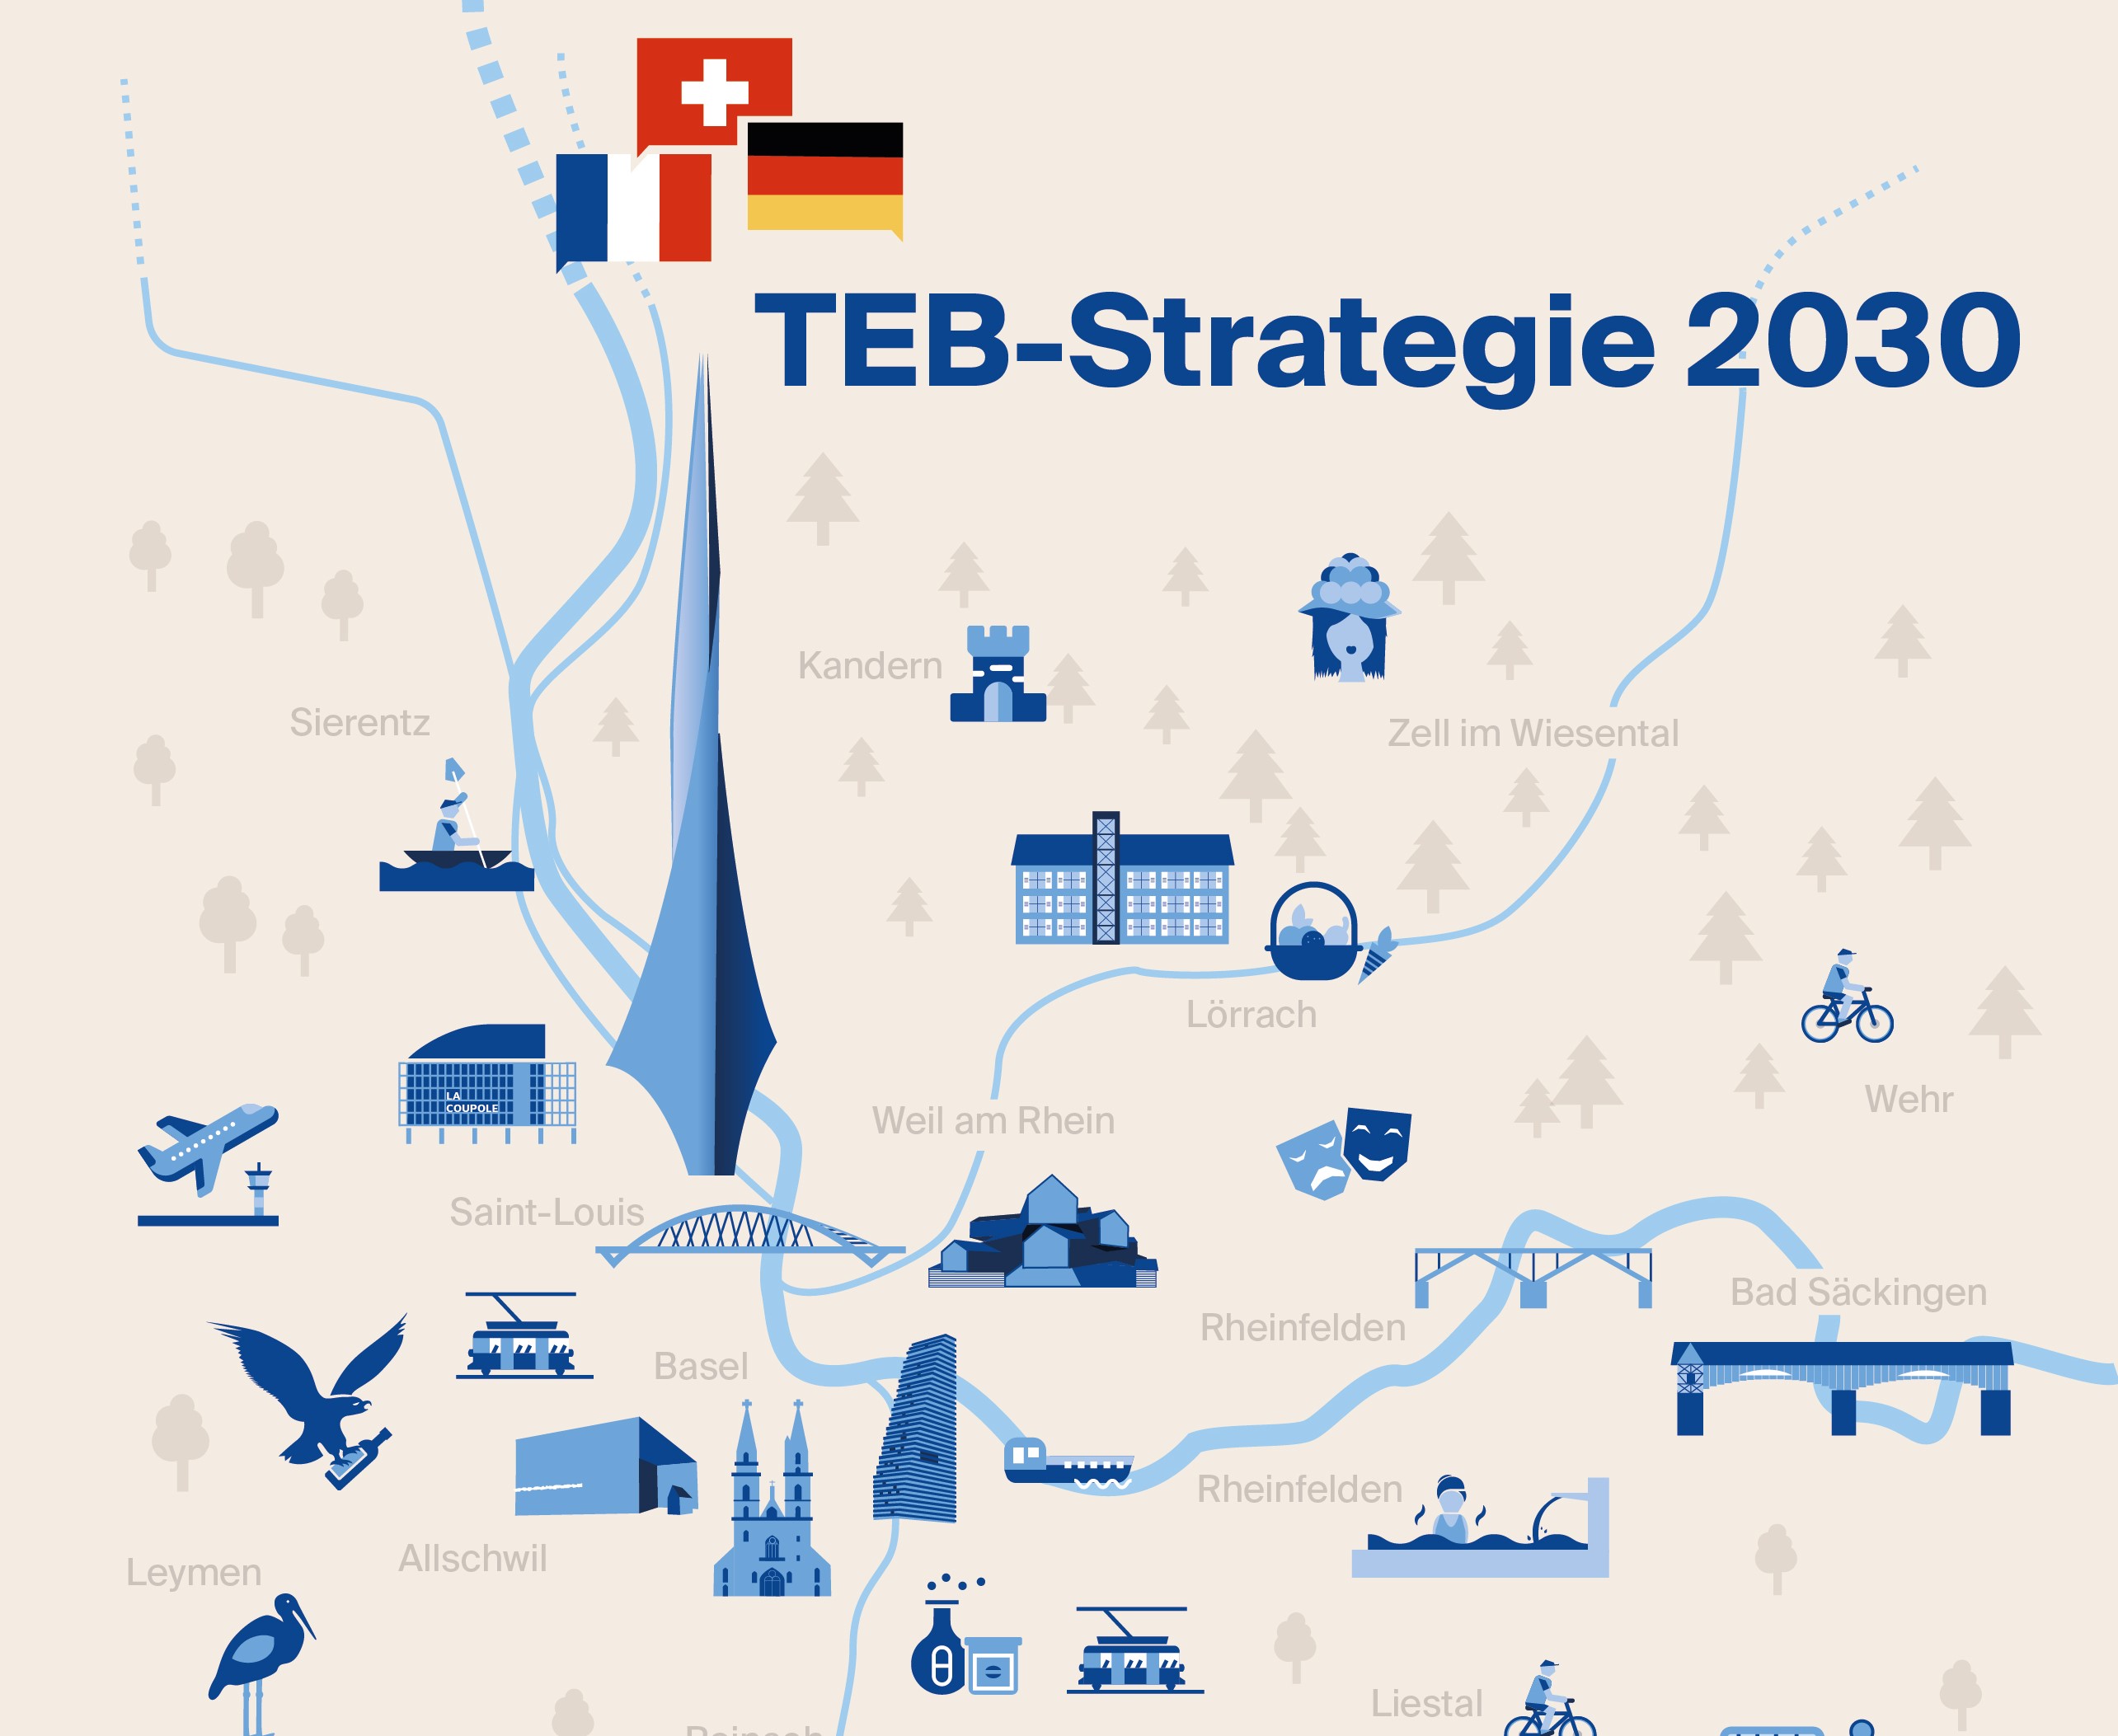 TEB-Strategie 2030